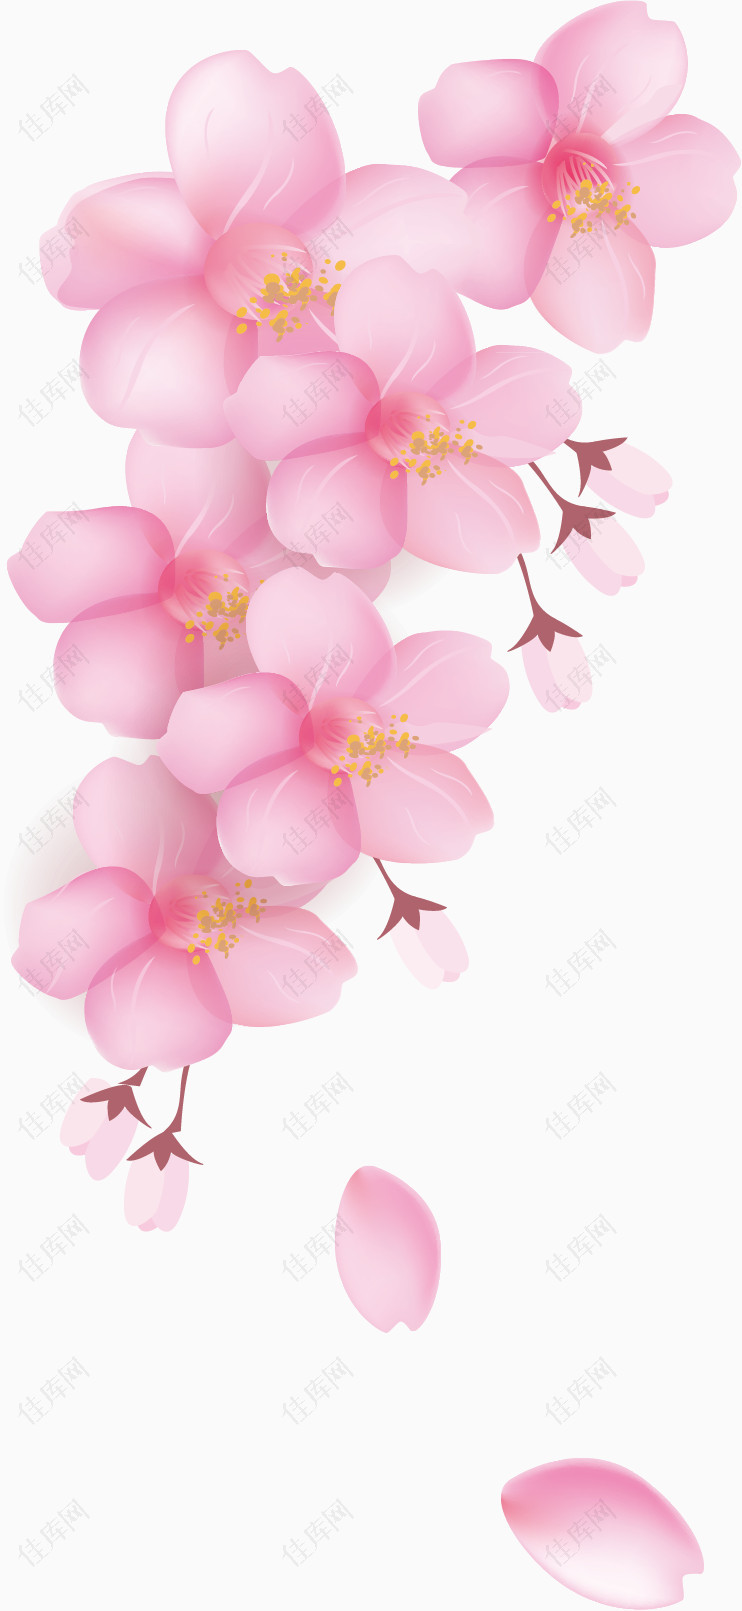 樱花花瓣元素